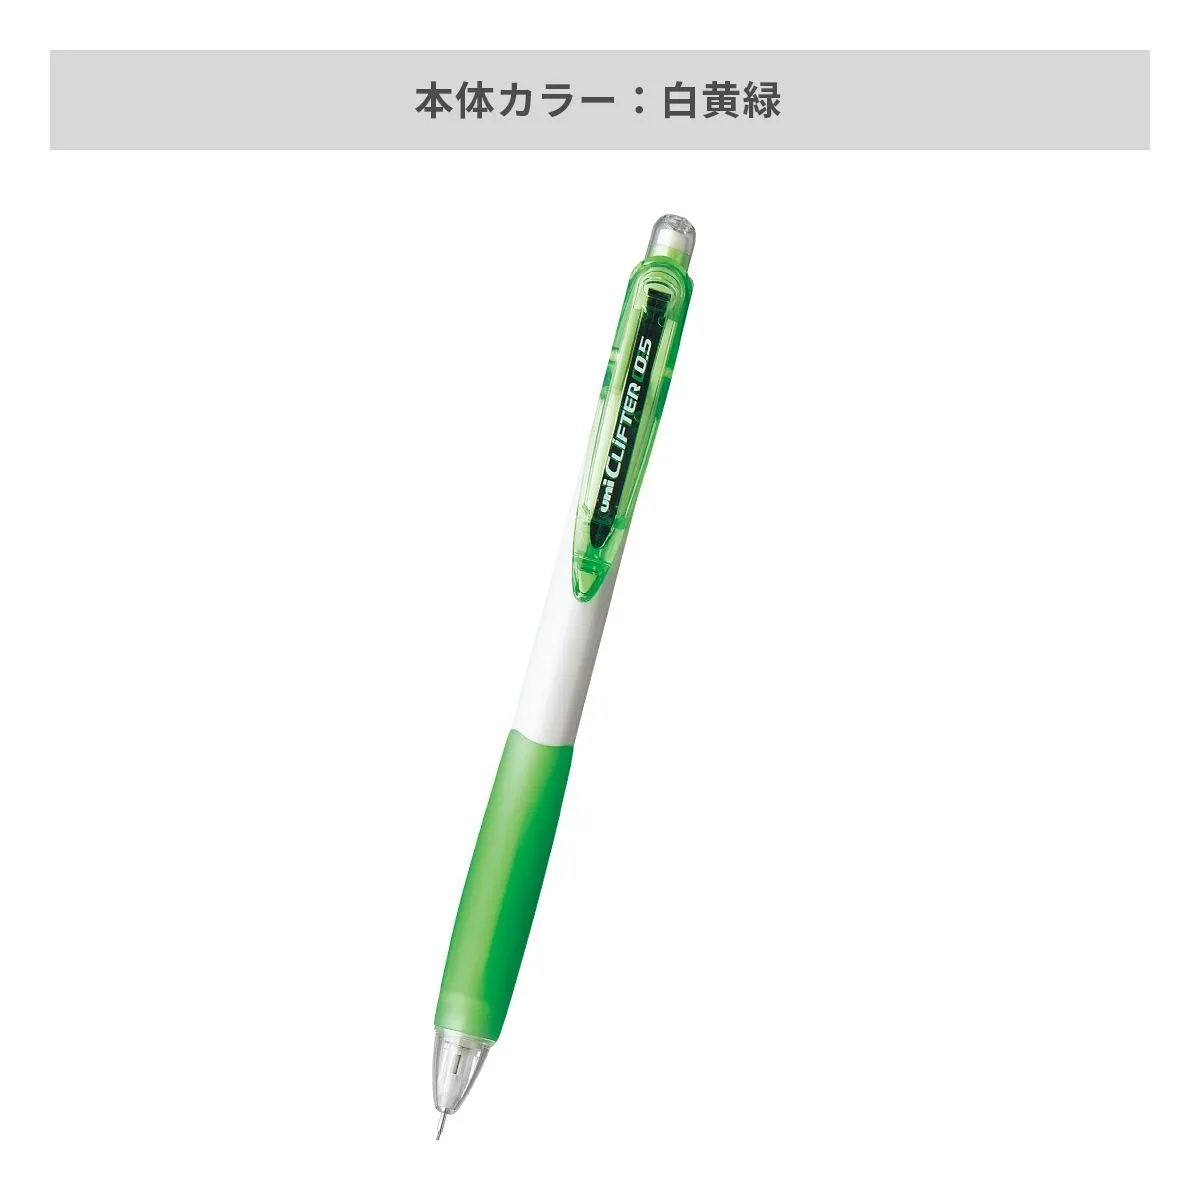 三菱鉛筆 クリフター シャープペン 白軸 0.5mm【名入れシャーペン / インクジェット印刷】 画像5